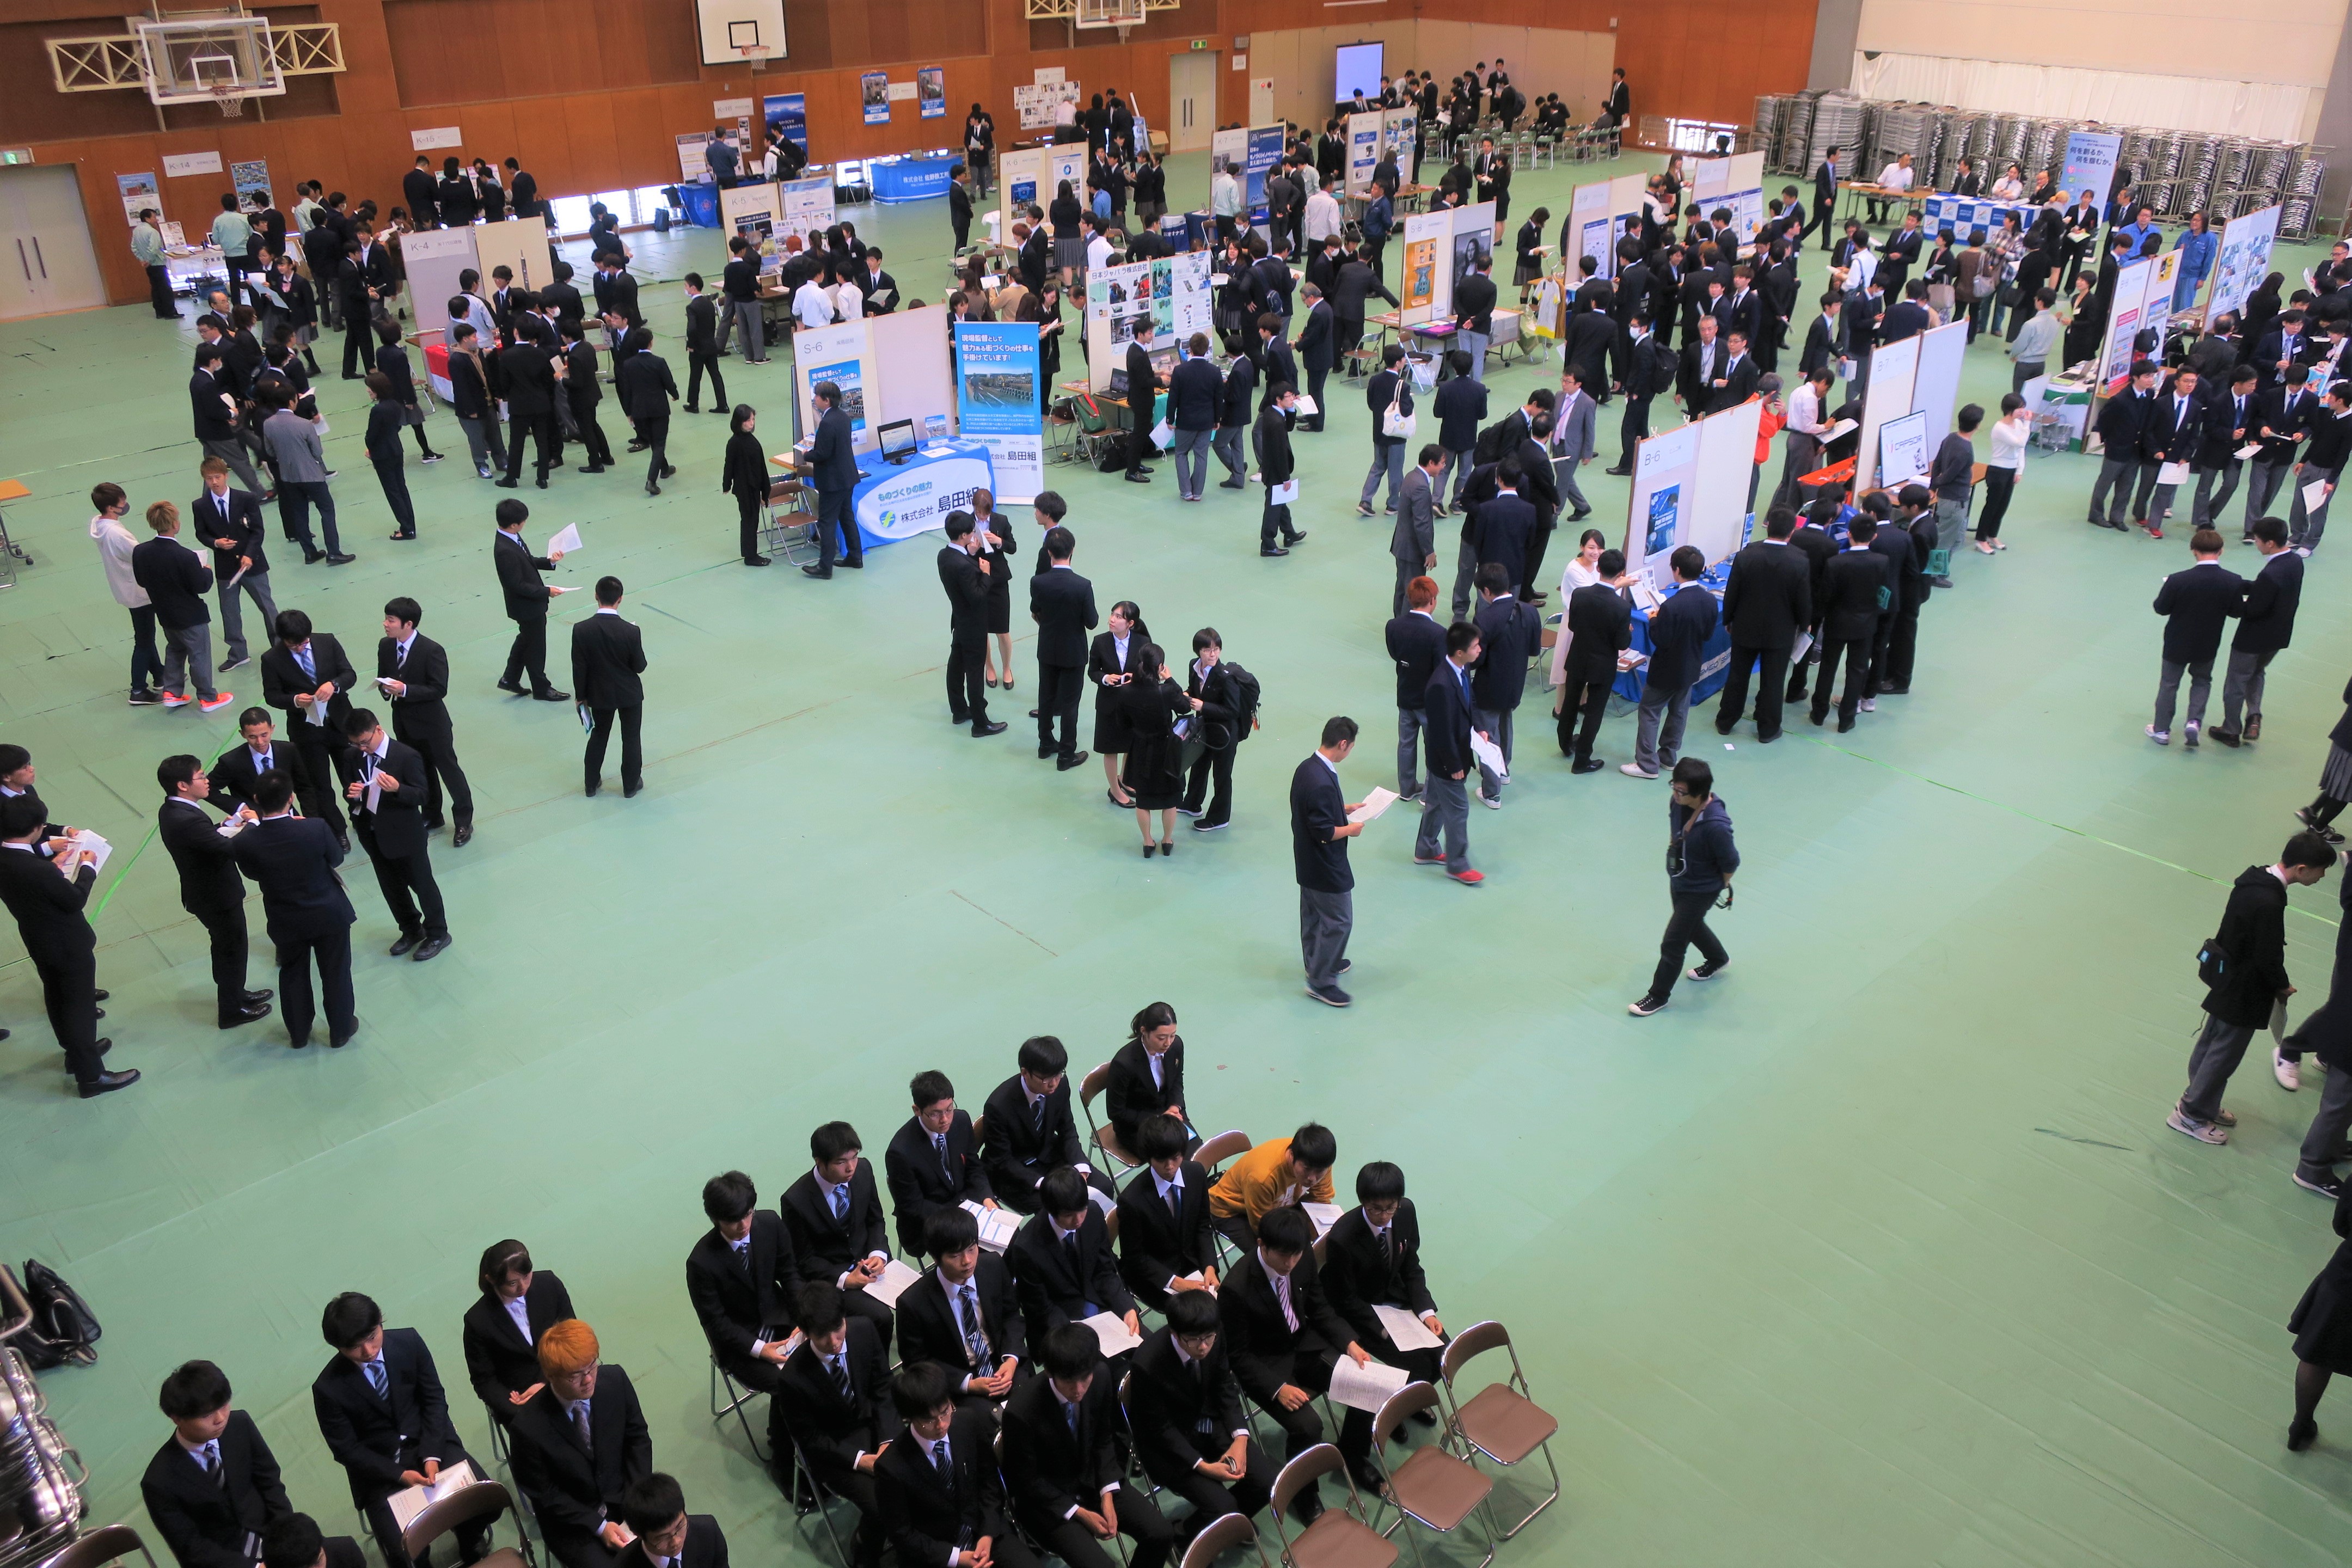 神戸高専企業展示会2019を開催しました。